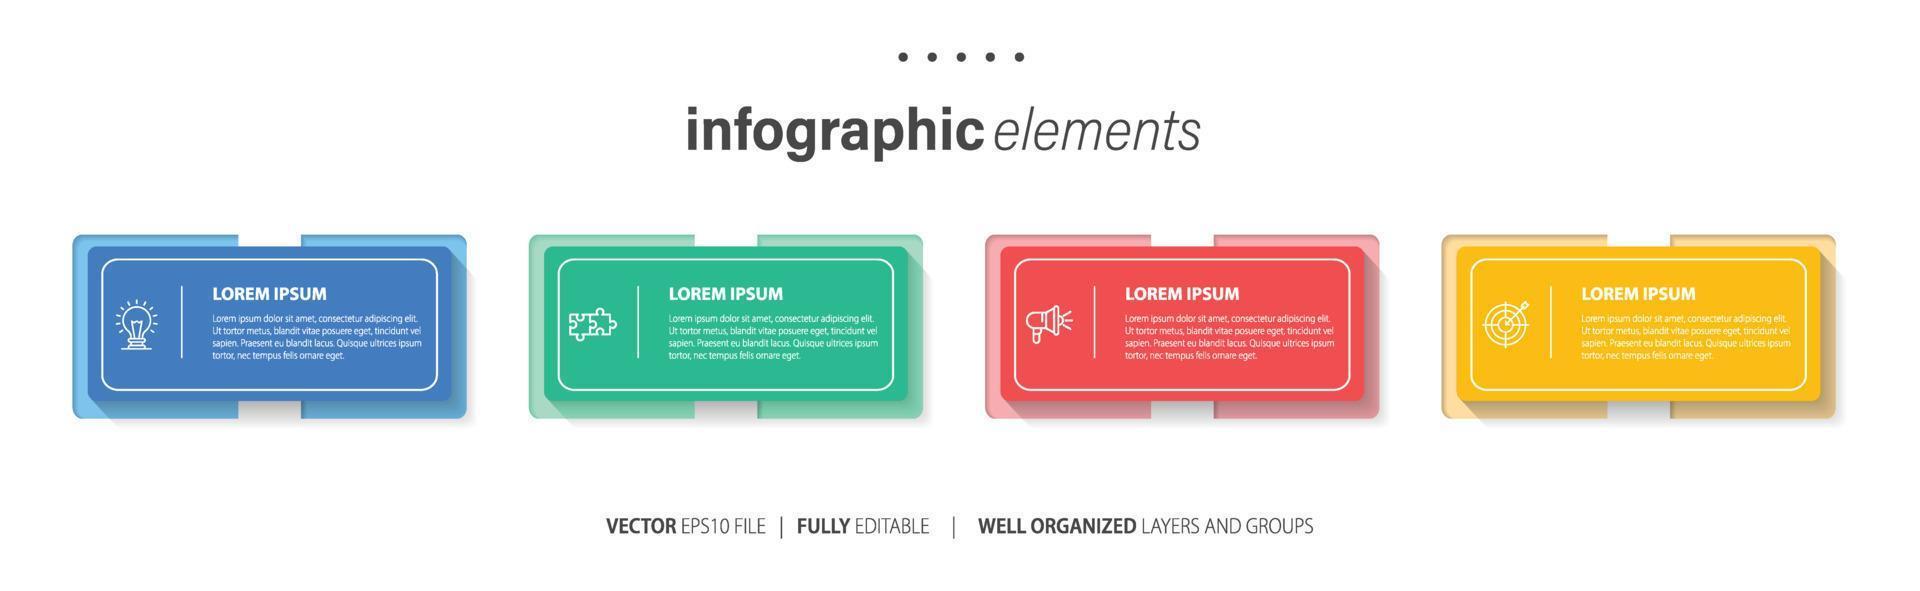 företag infographic mall design med tal 4 alternativ eller steg. vektor